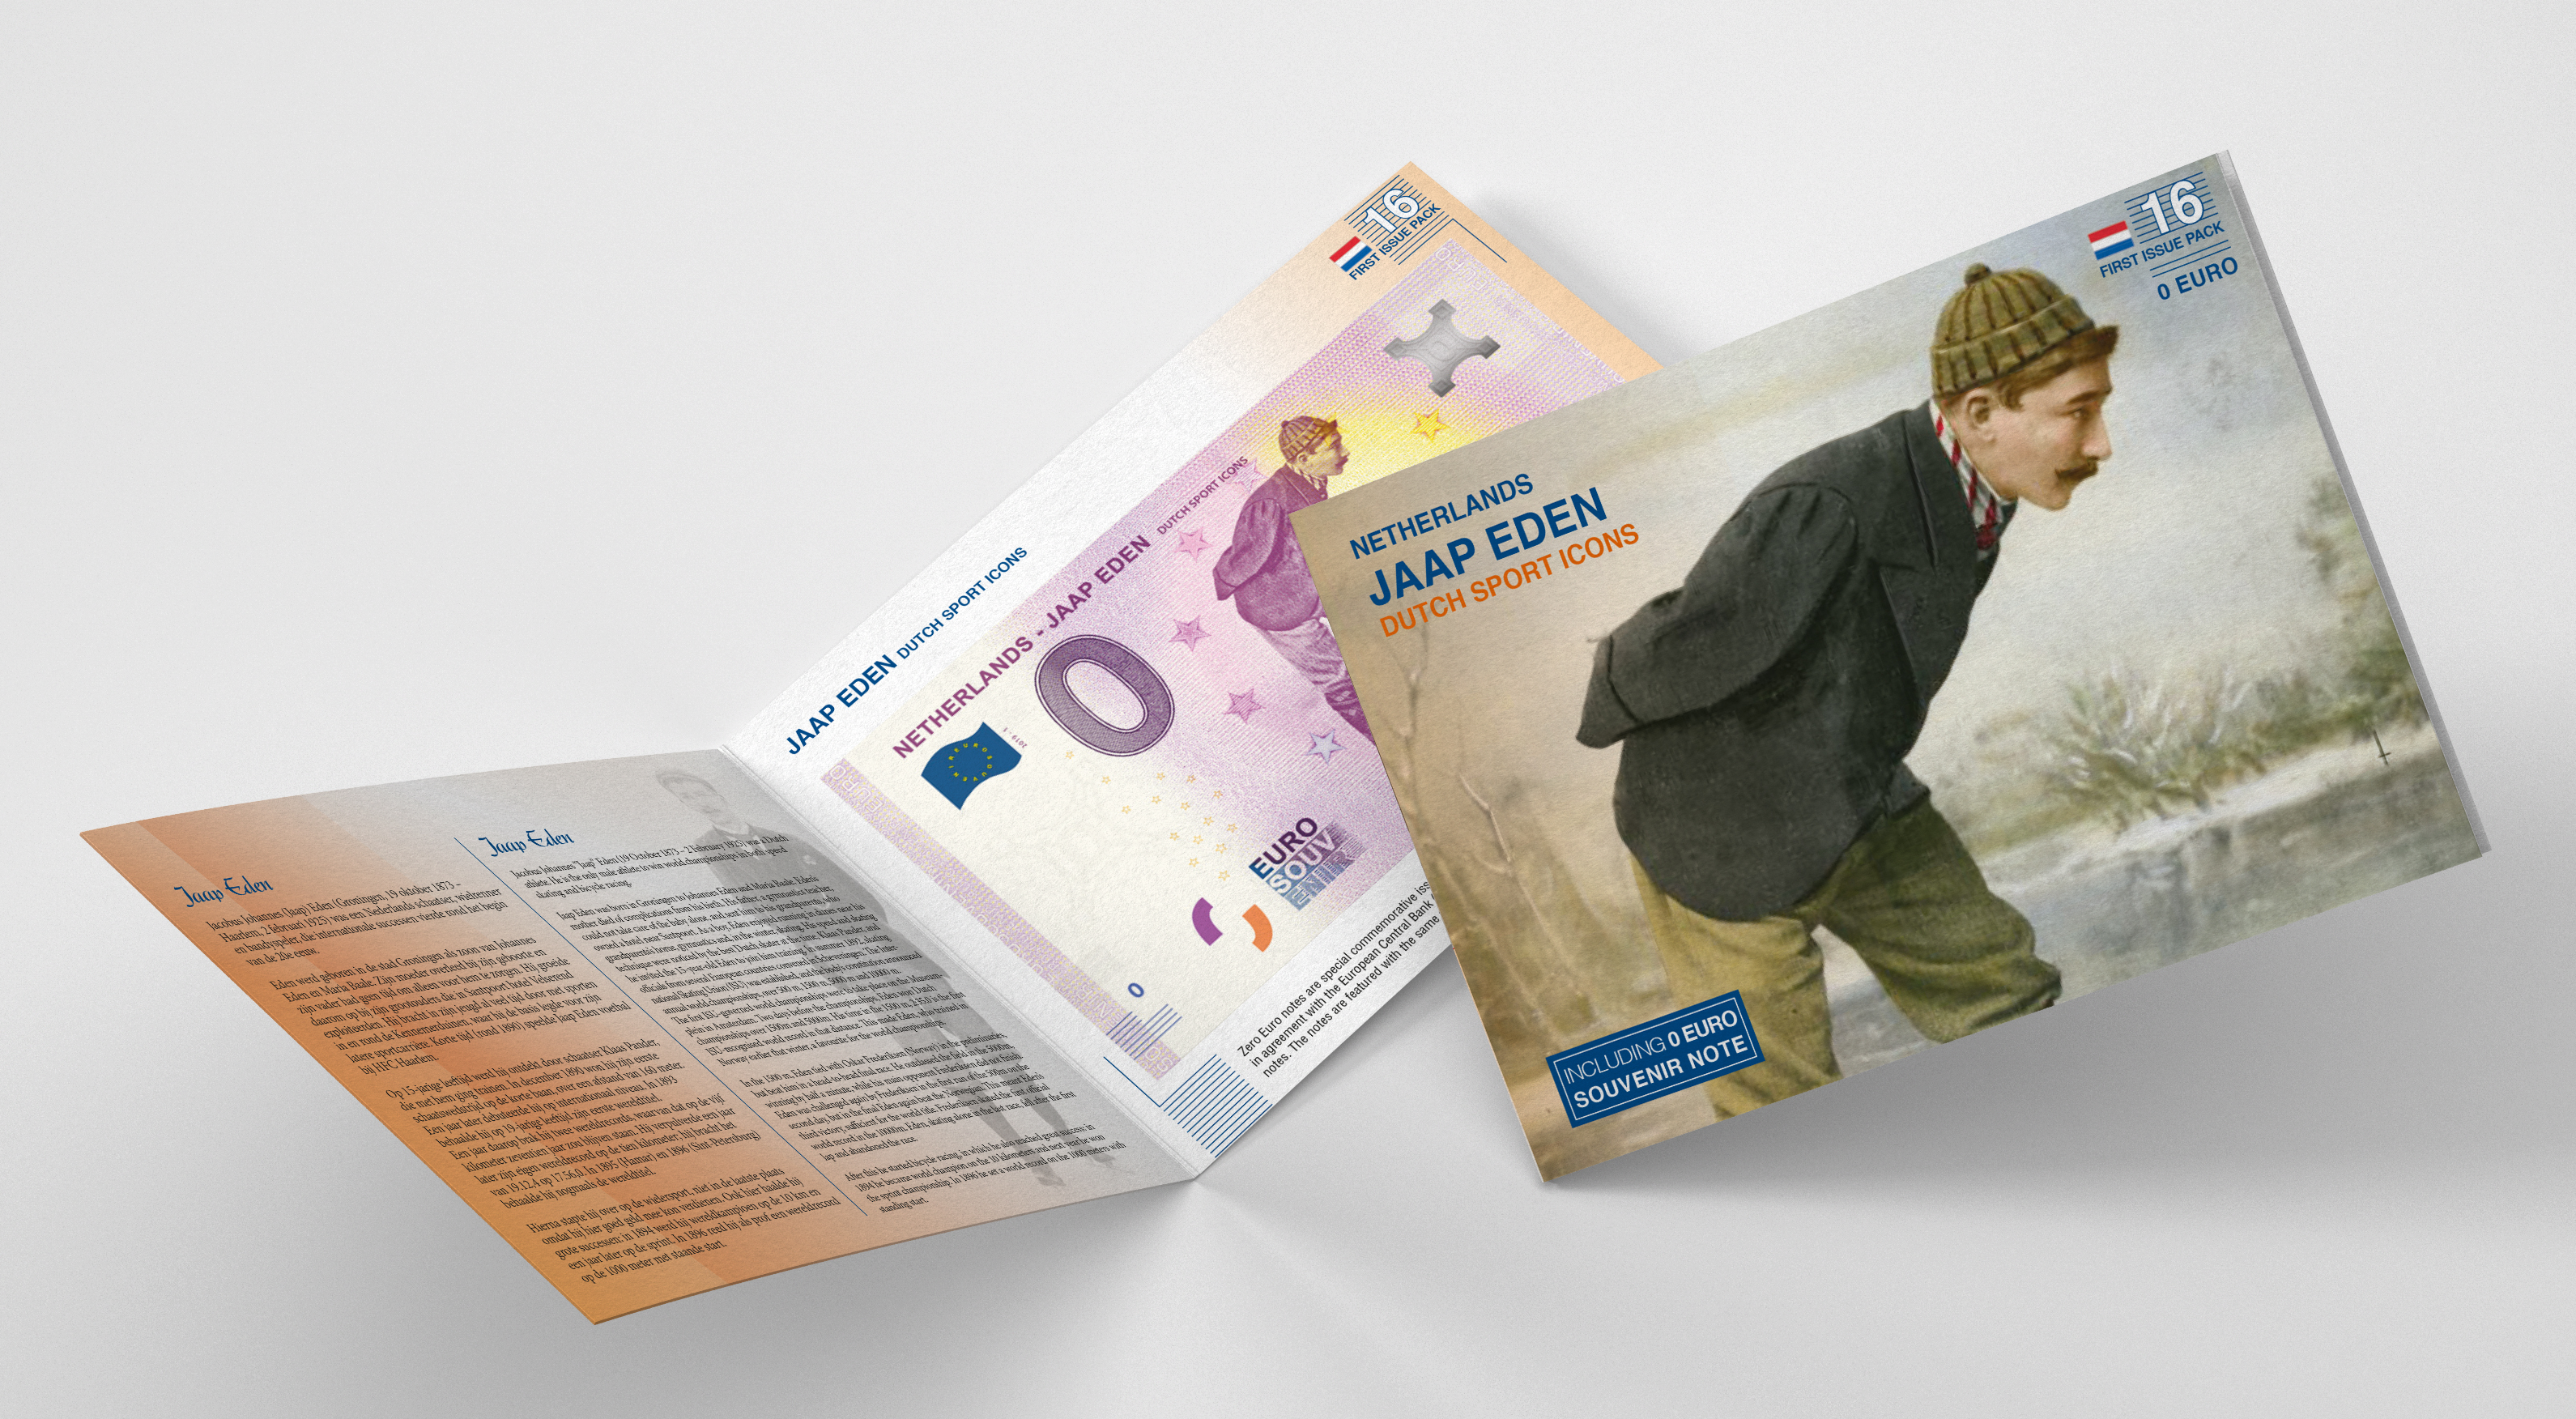 0 Euro biljet Nederland 2019 - Jaap Eden LIMITED EDITION FIP#16